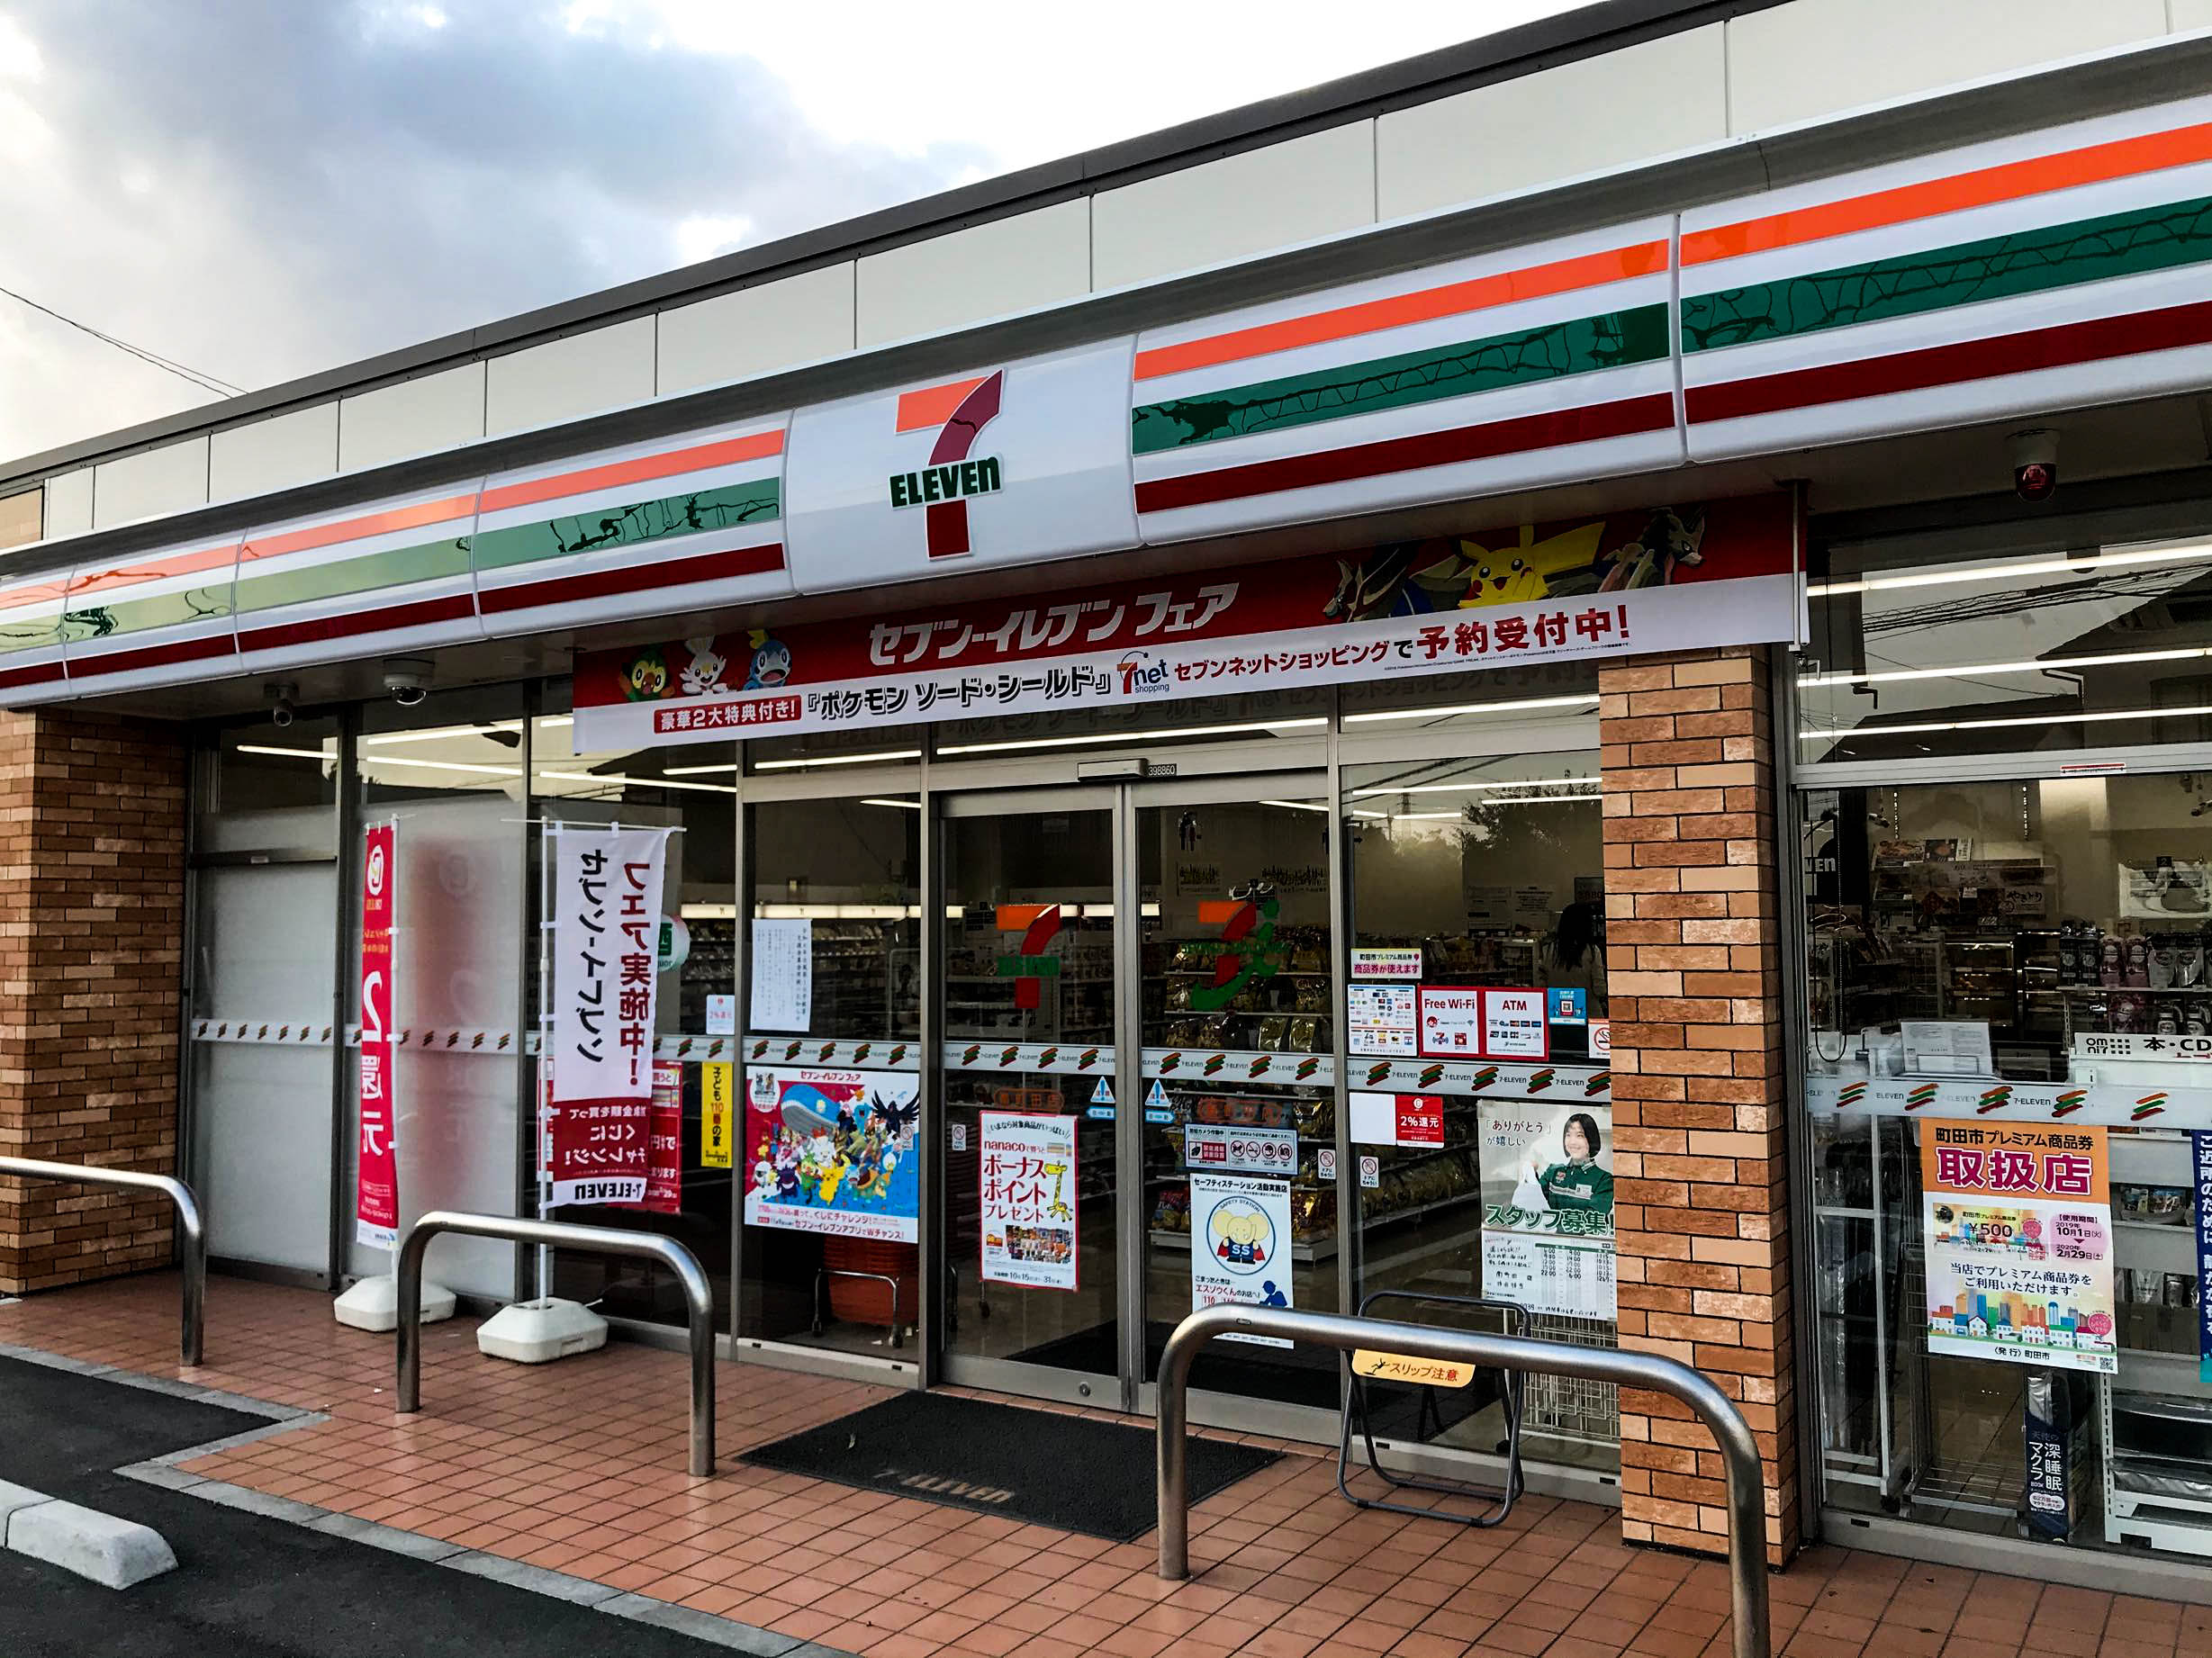 7-Eleven do Japão permite que lojas interrompam operações noturnas